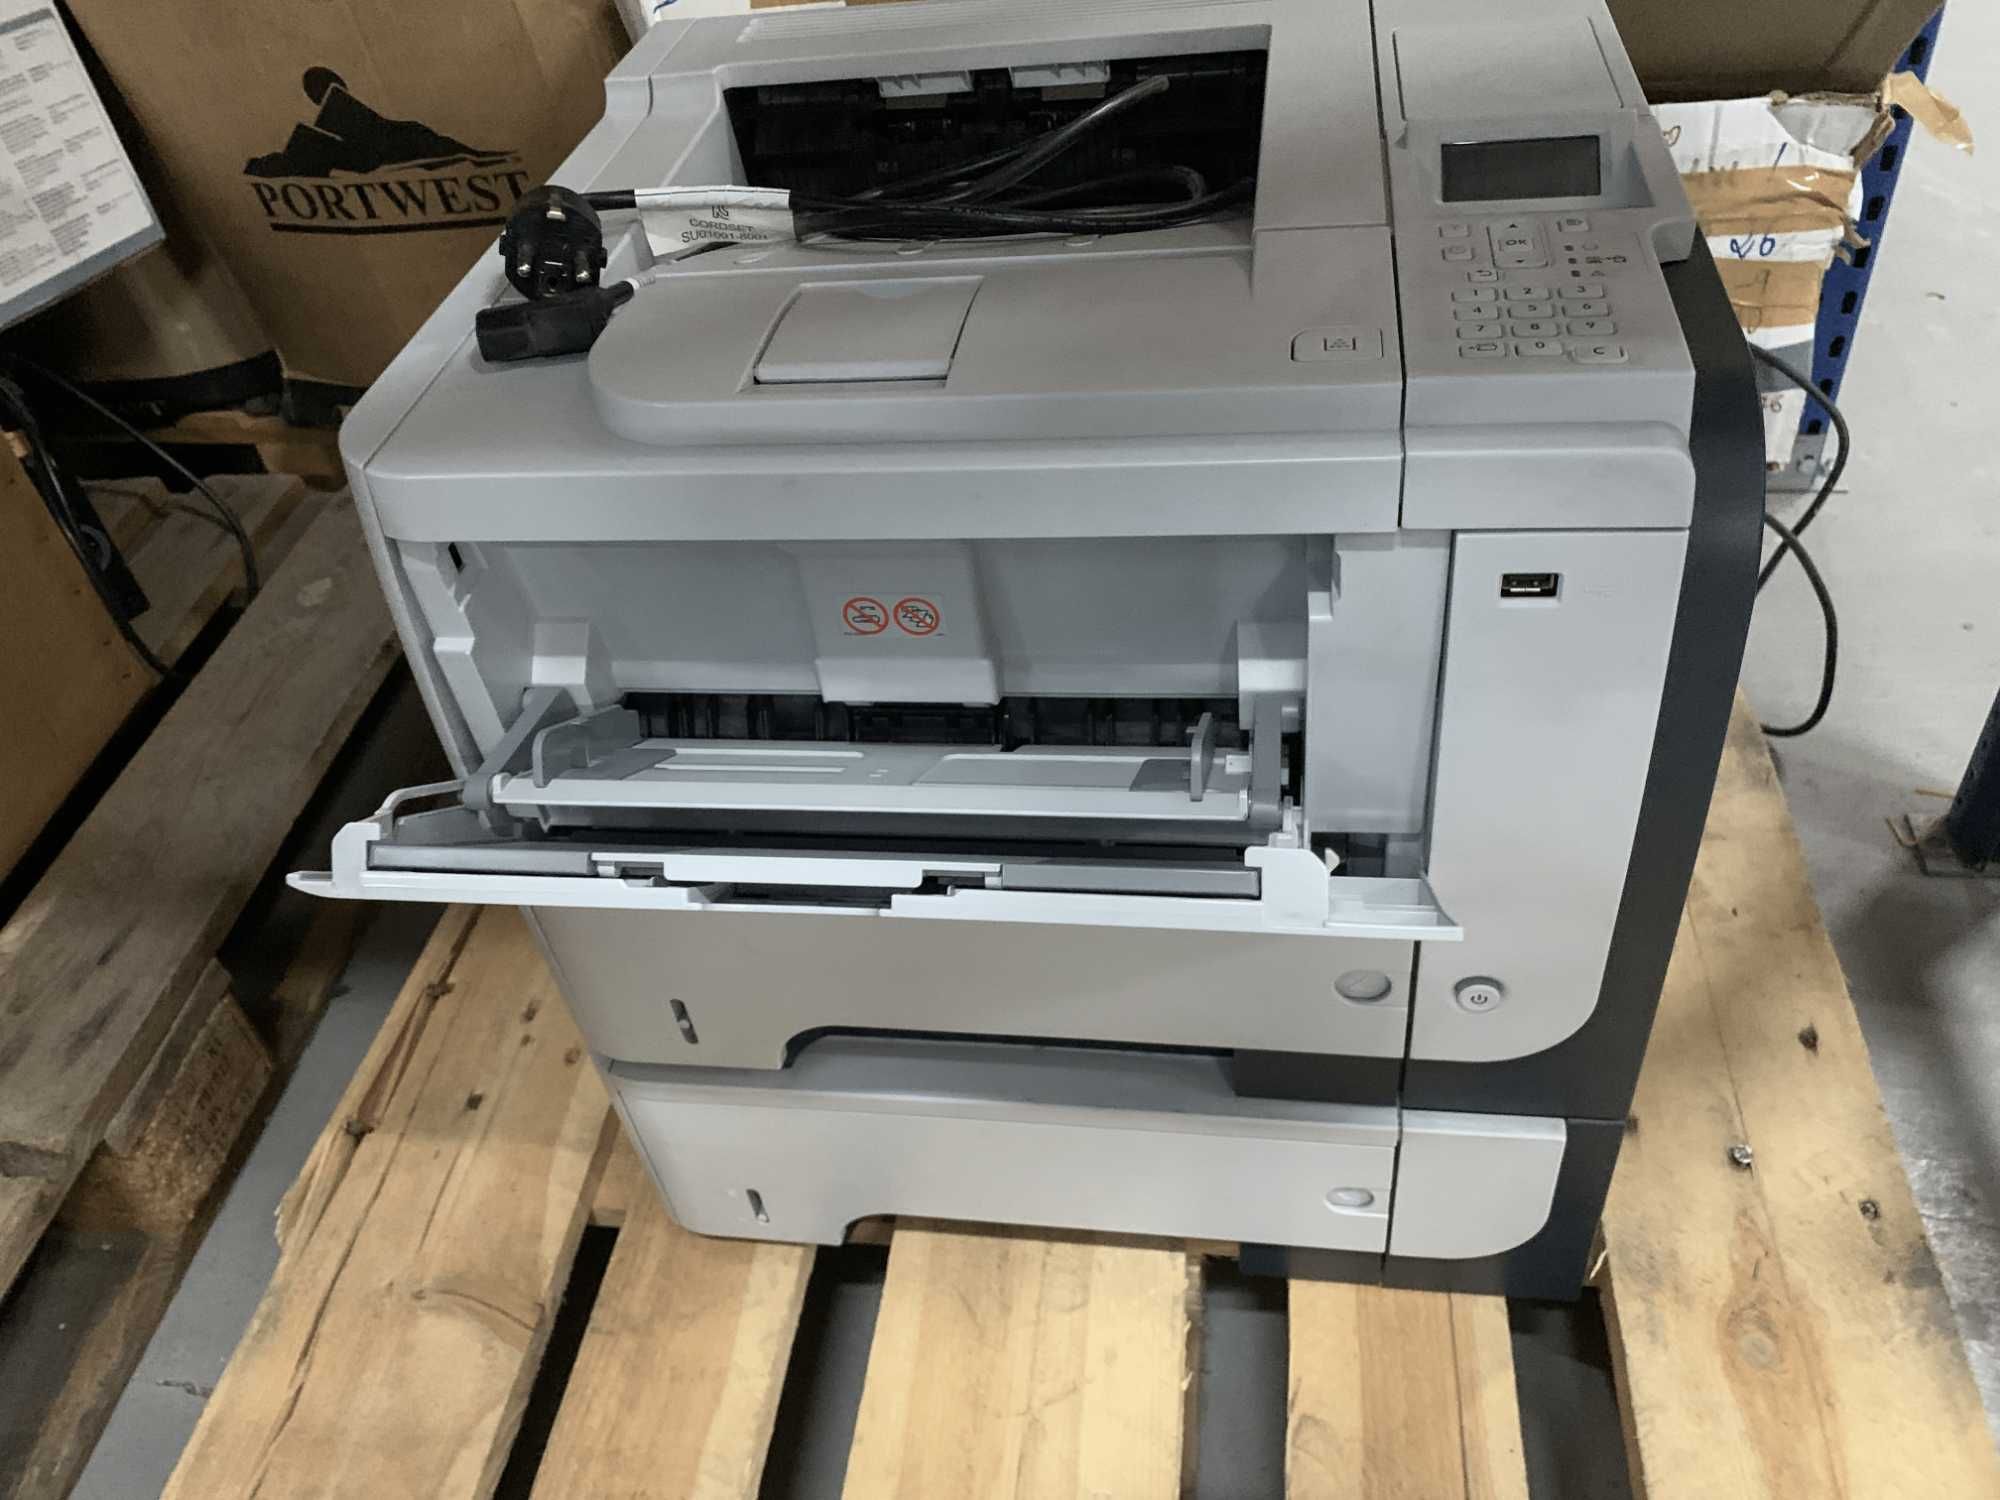 Impressora HP LaserJet P3015